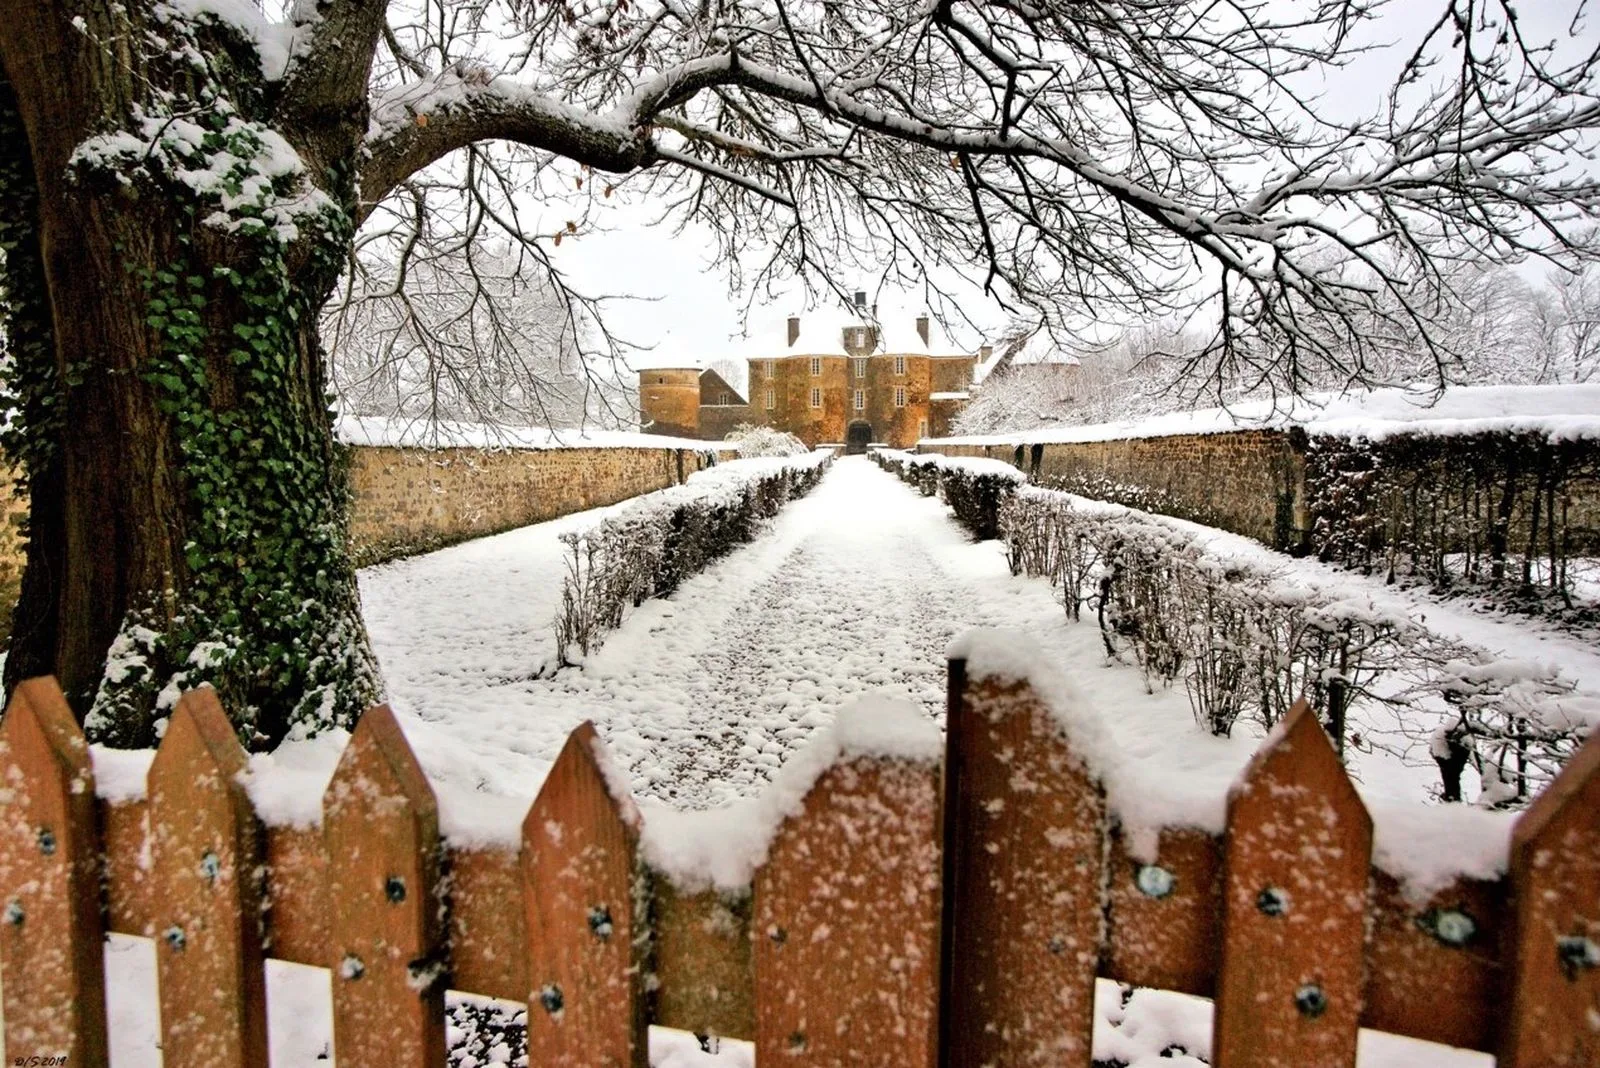 Le château de Ratilly sous la neige